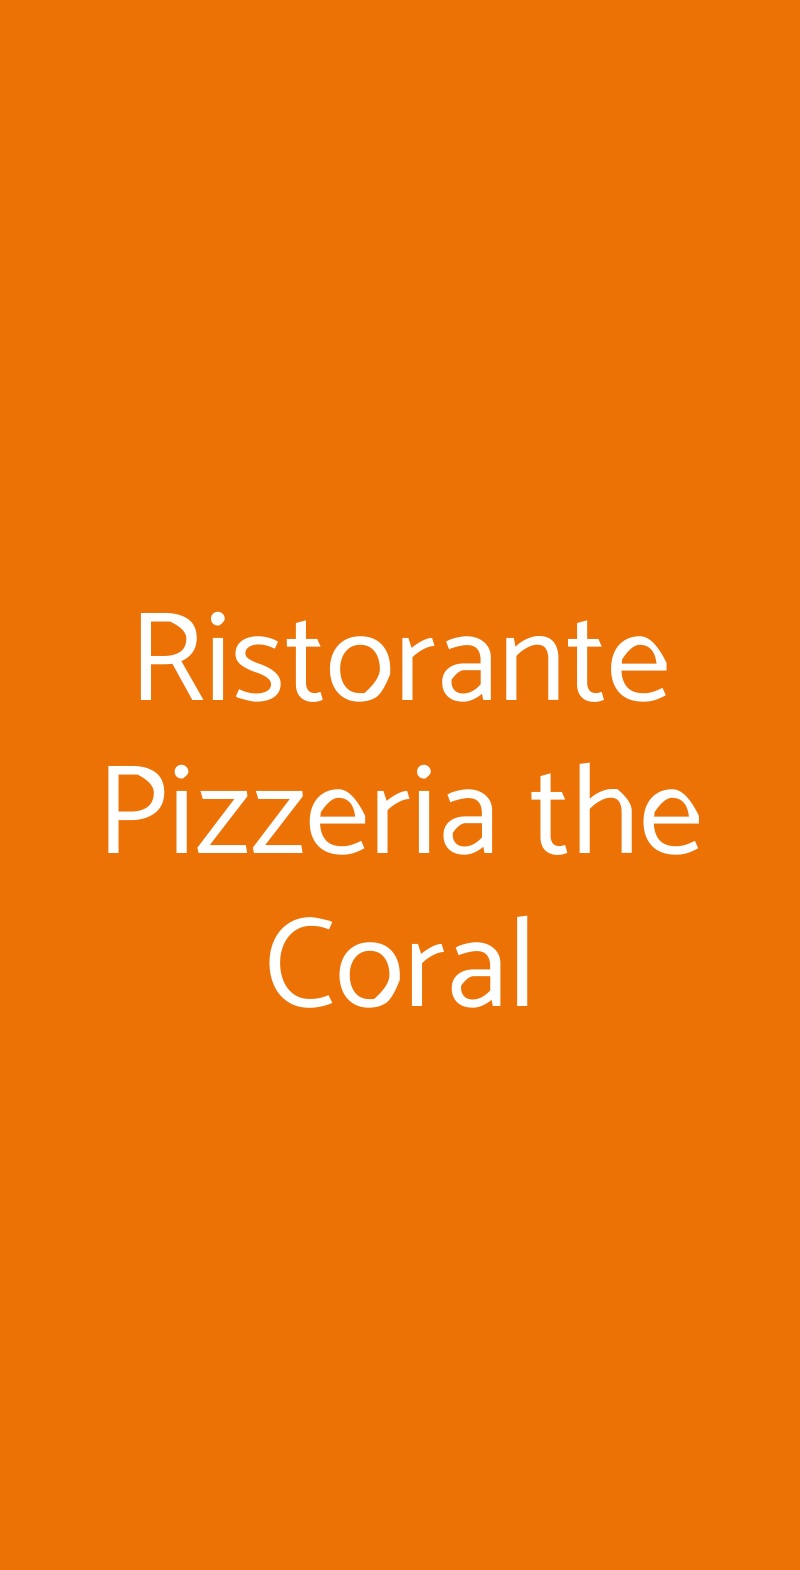 Ristorante Pizzeria the Coral Sesto San Giovanni menù 1 pagina